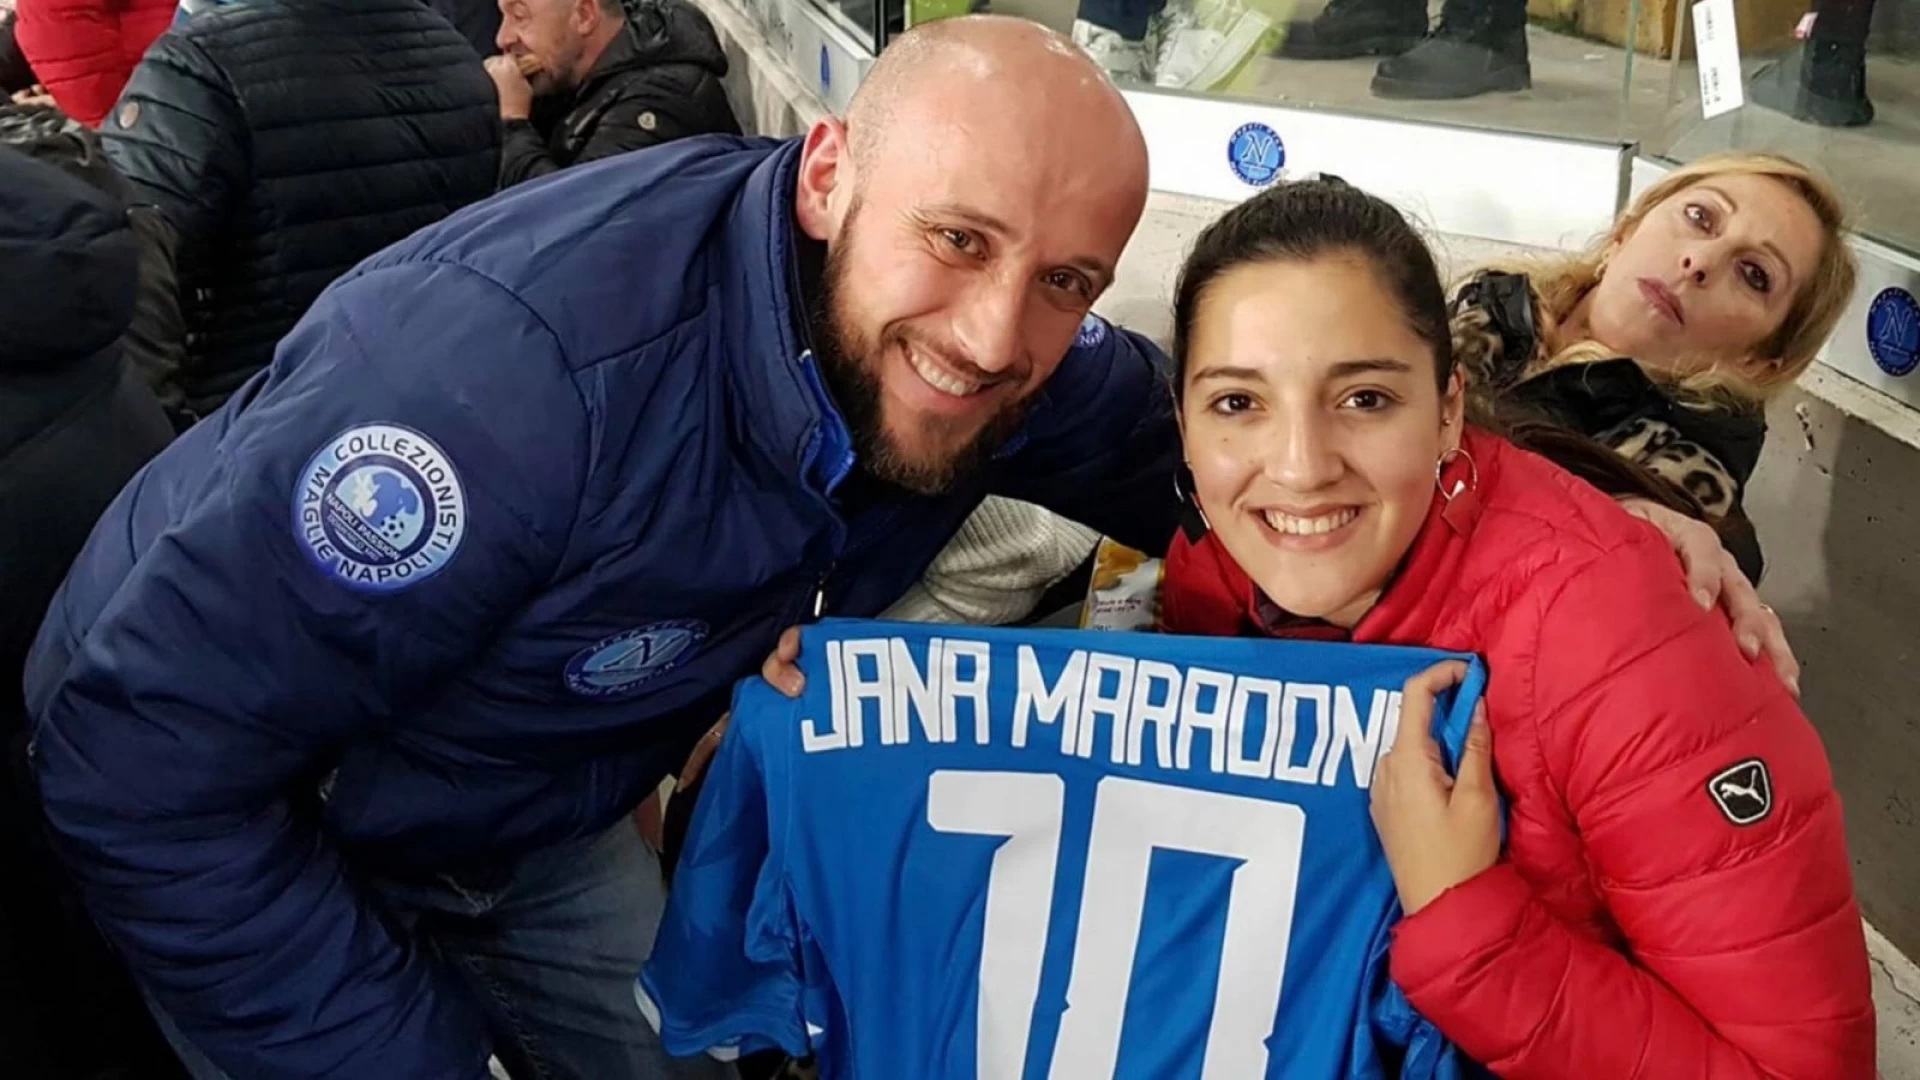 Jana Maradona ospite del Napoli Club Campobasso al San Paolo in occasione della gara Napoli – Lazio.